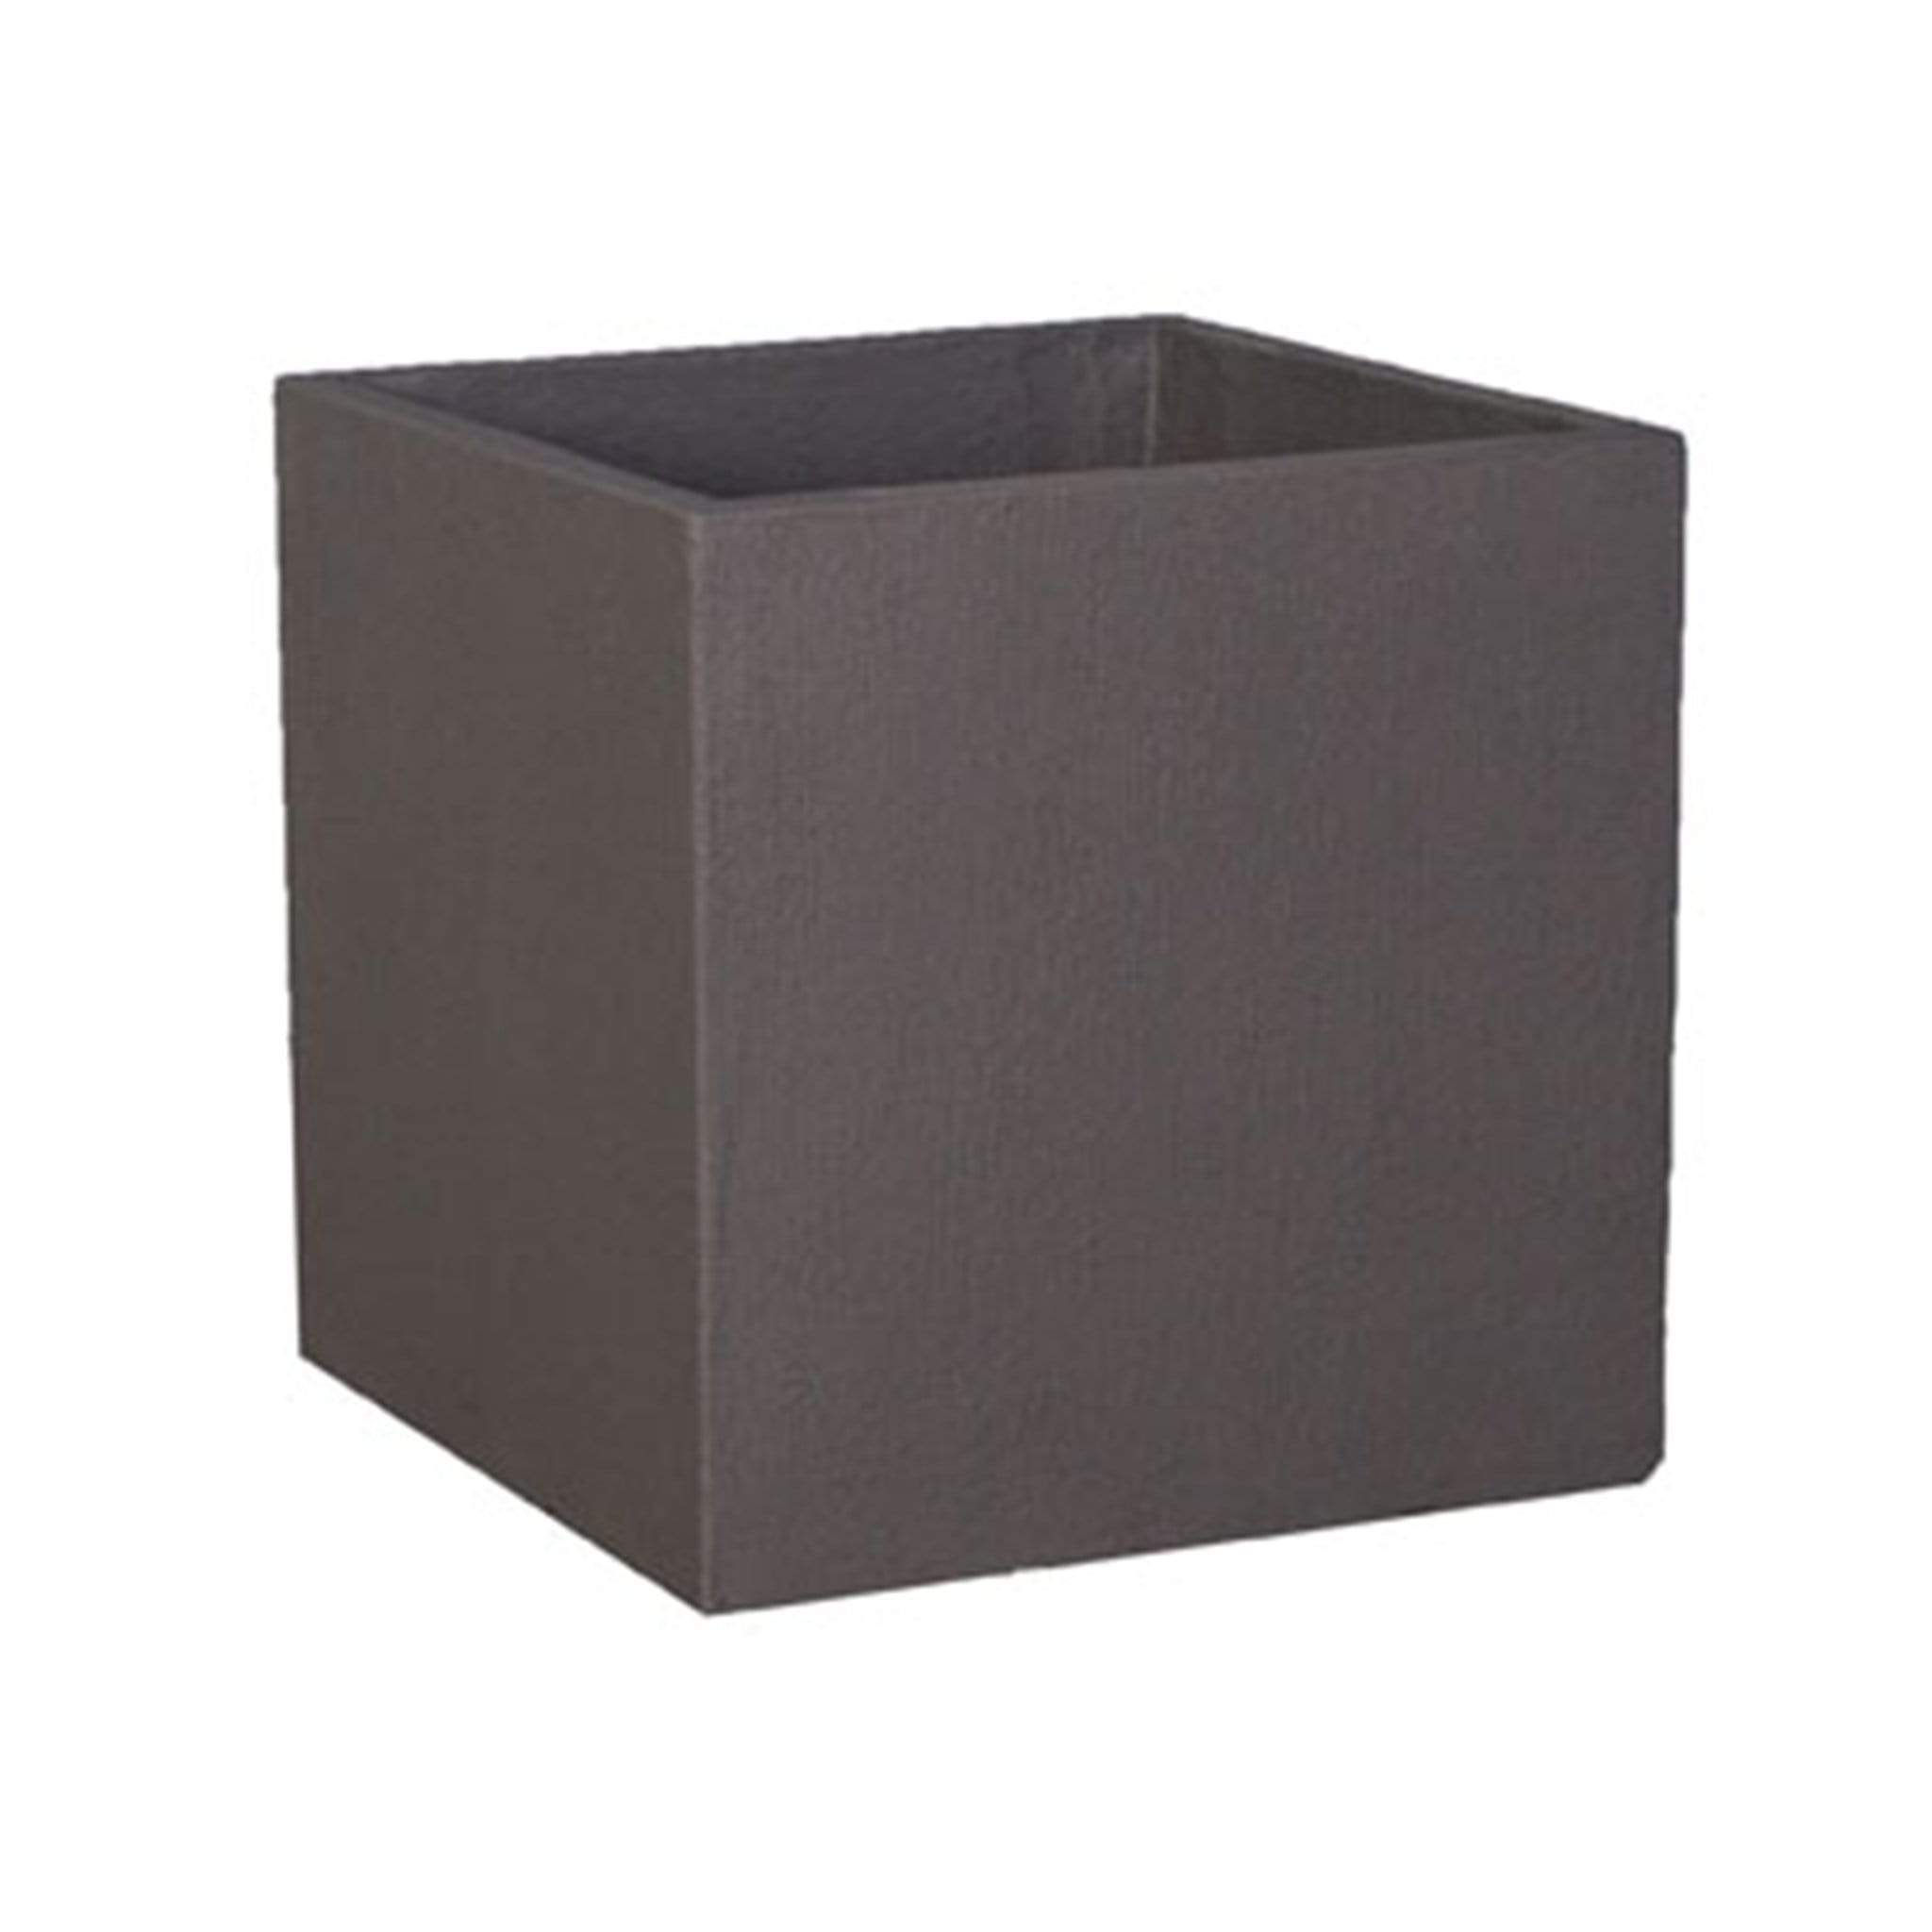 Cube Concrete Pot The Pot Shack Gauteng Concrete Pot